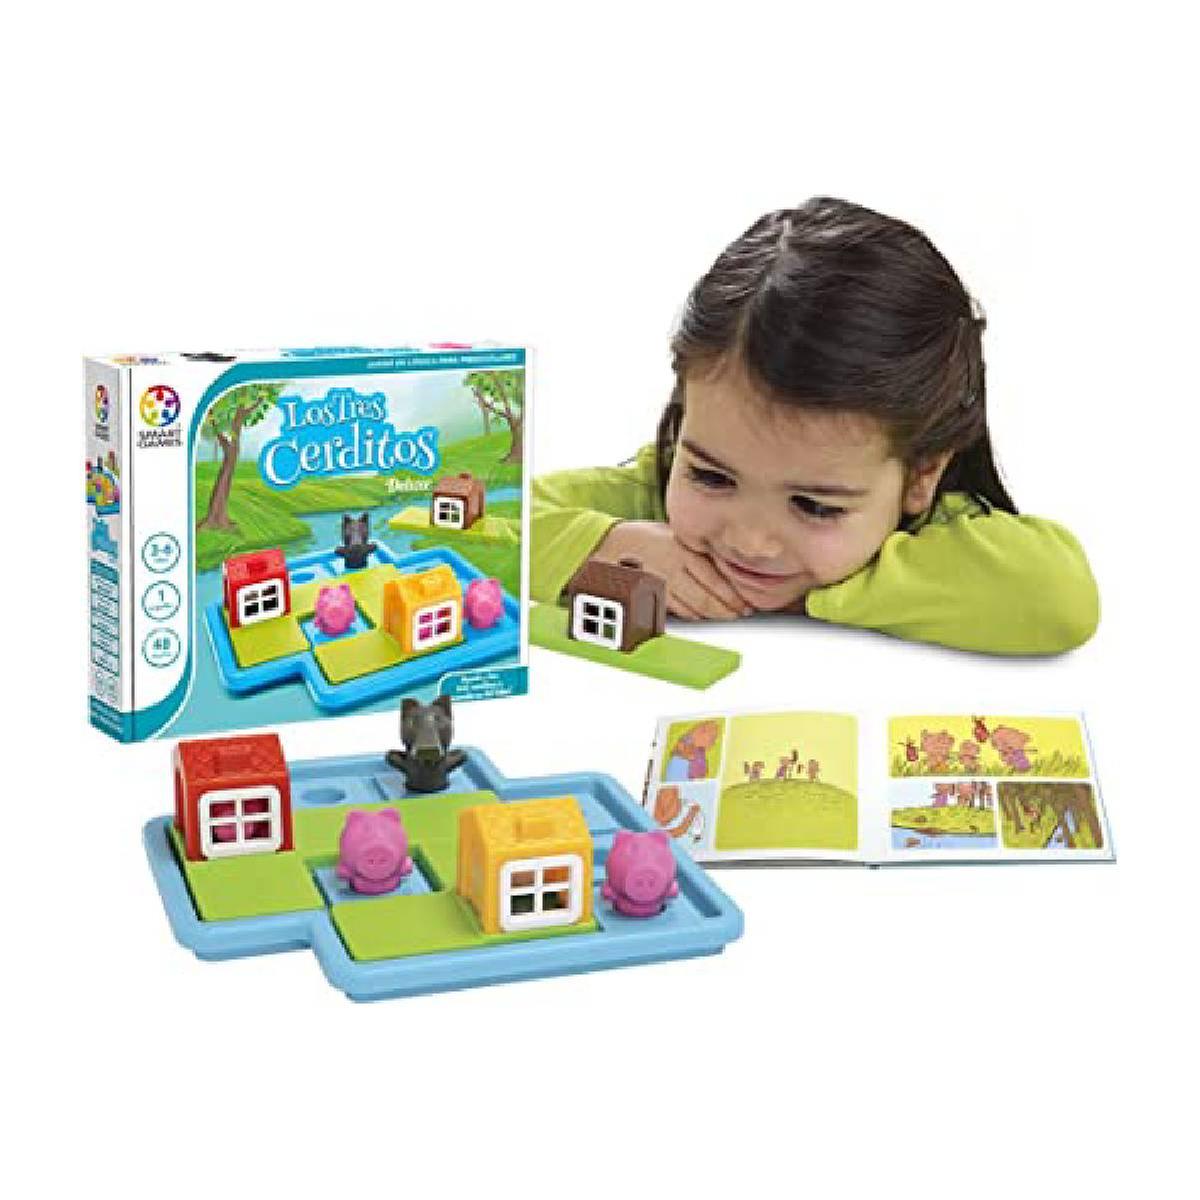 Los tres cerditos deluxe - Juego de mesa | Juegos Niños +5 Años | Toys"R"Us  España